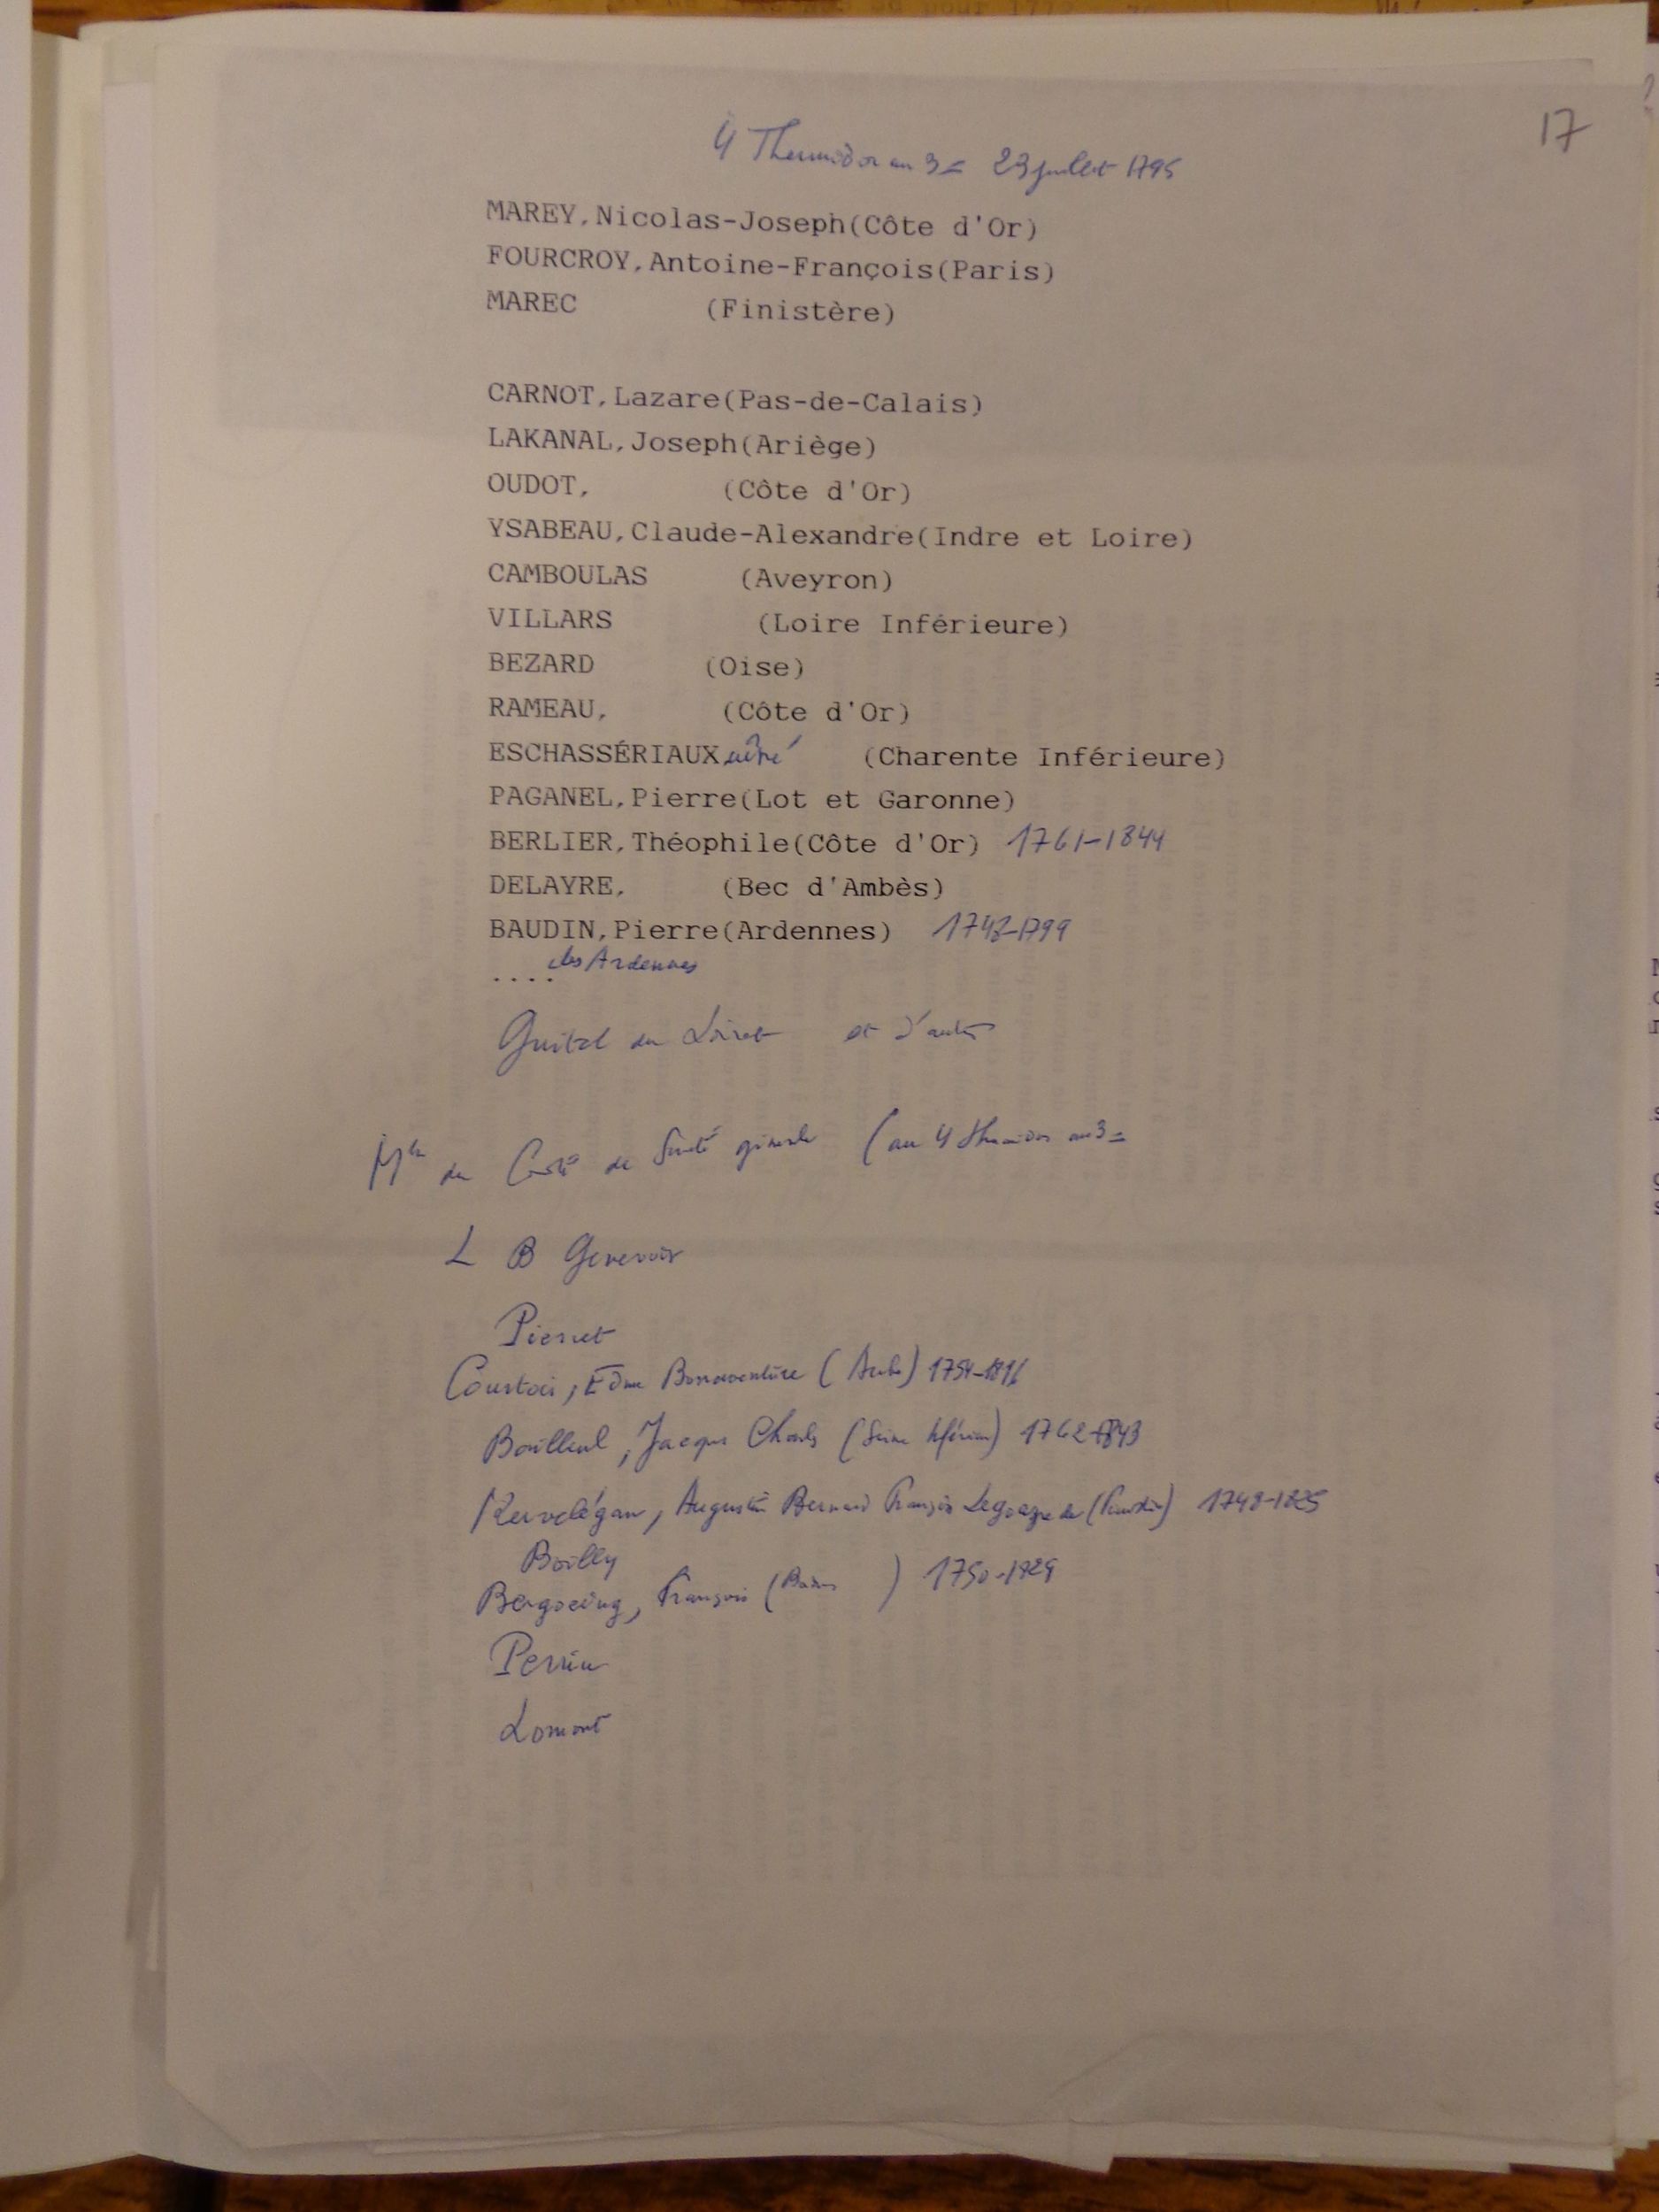 Une liste manuscrite d'identification des signataires de la pétition en faveur de Monge mentionnée dans l'arrêté.